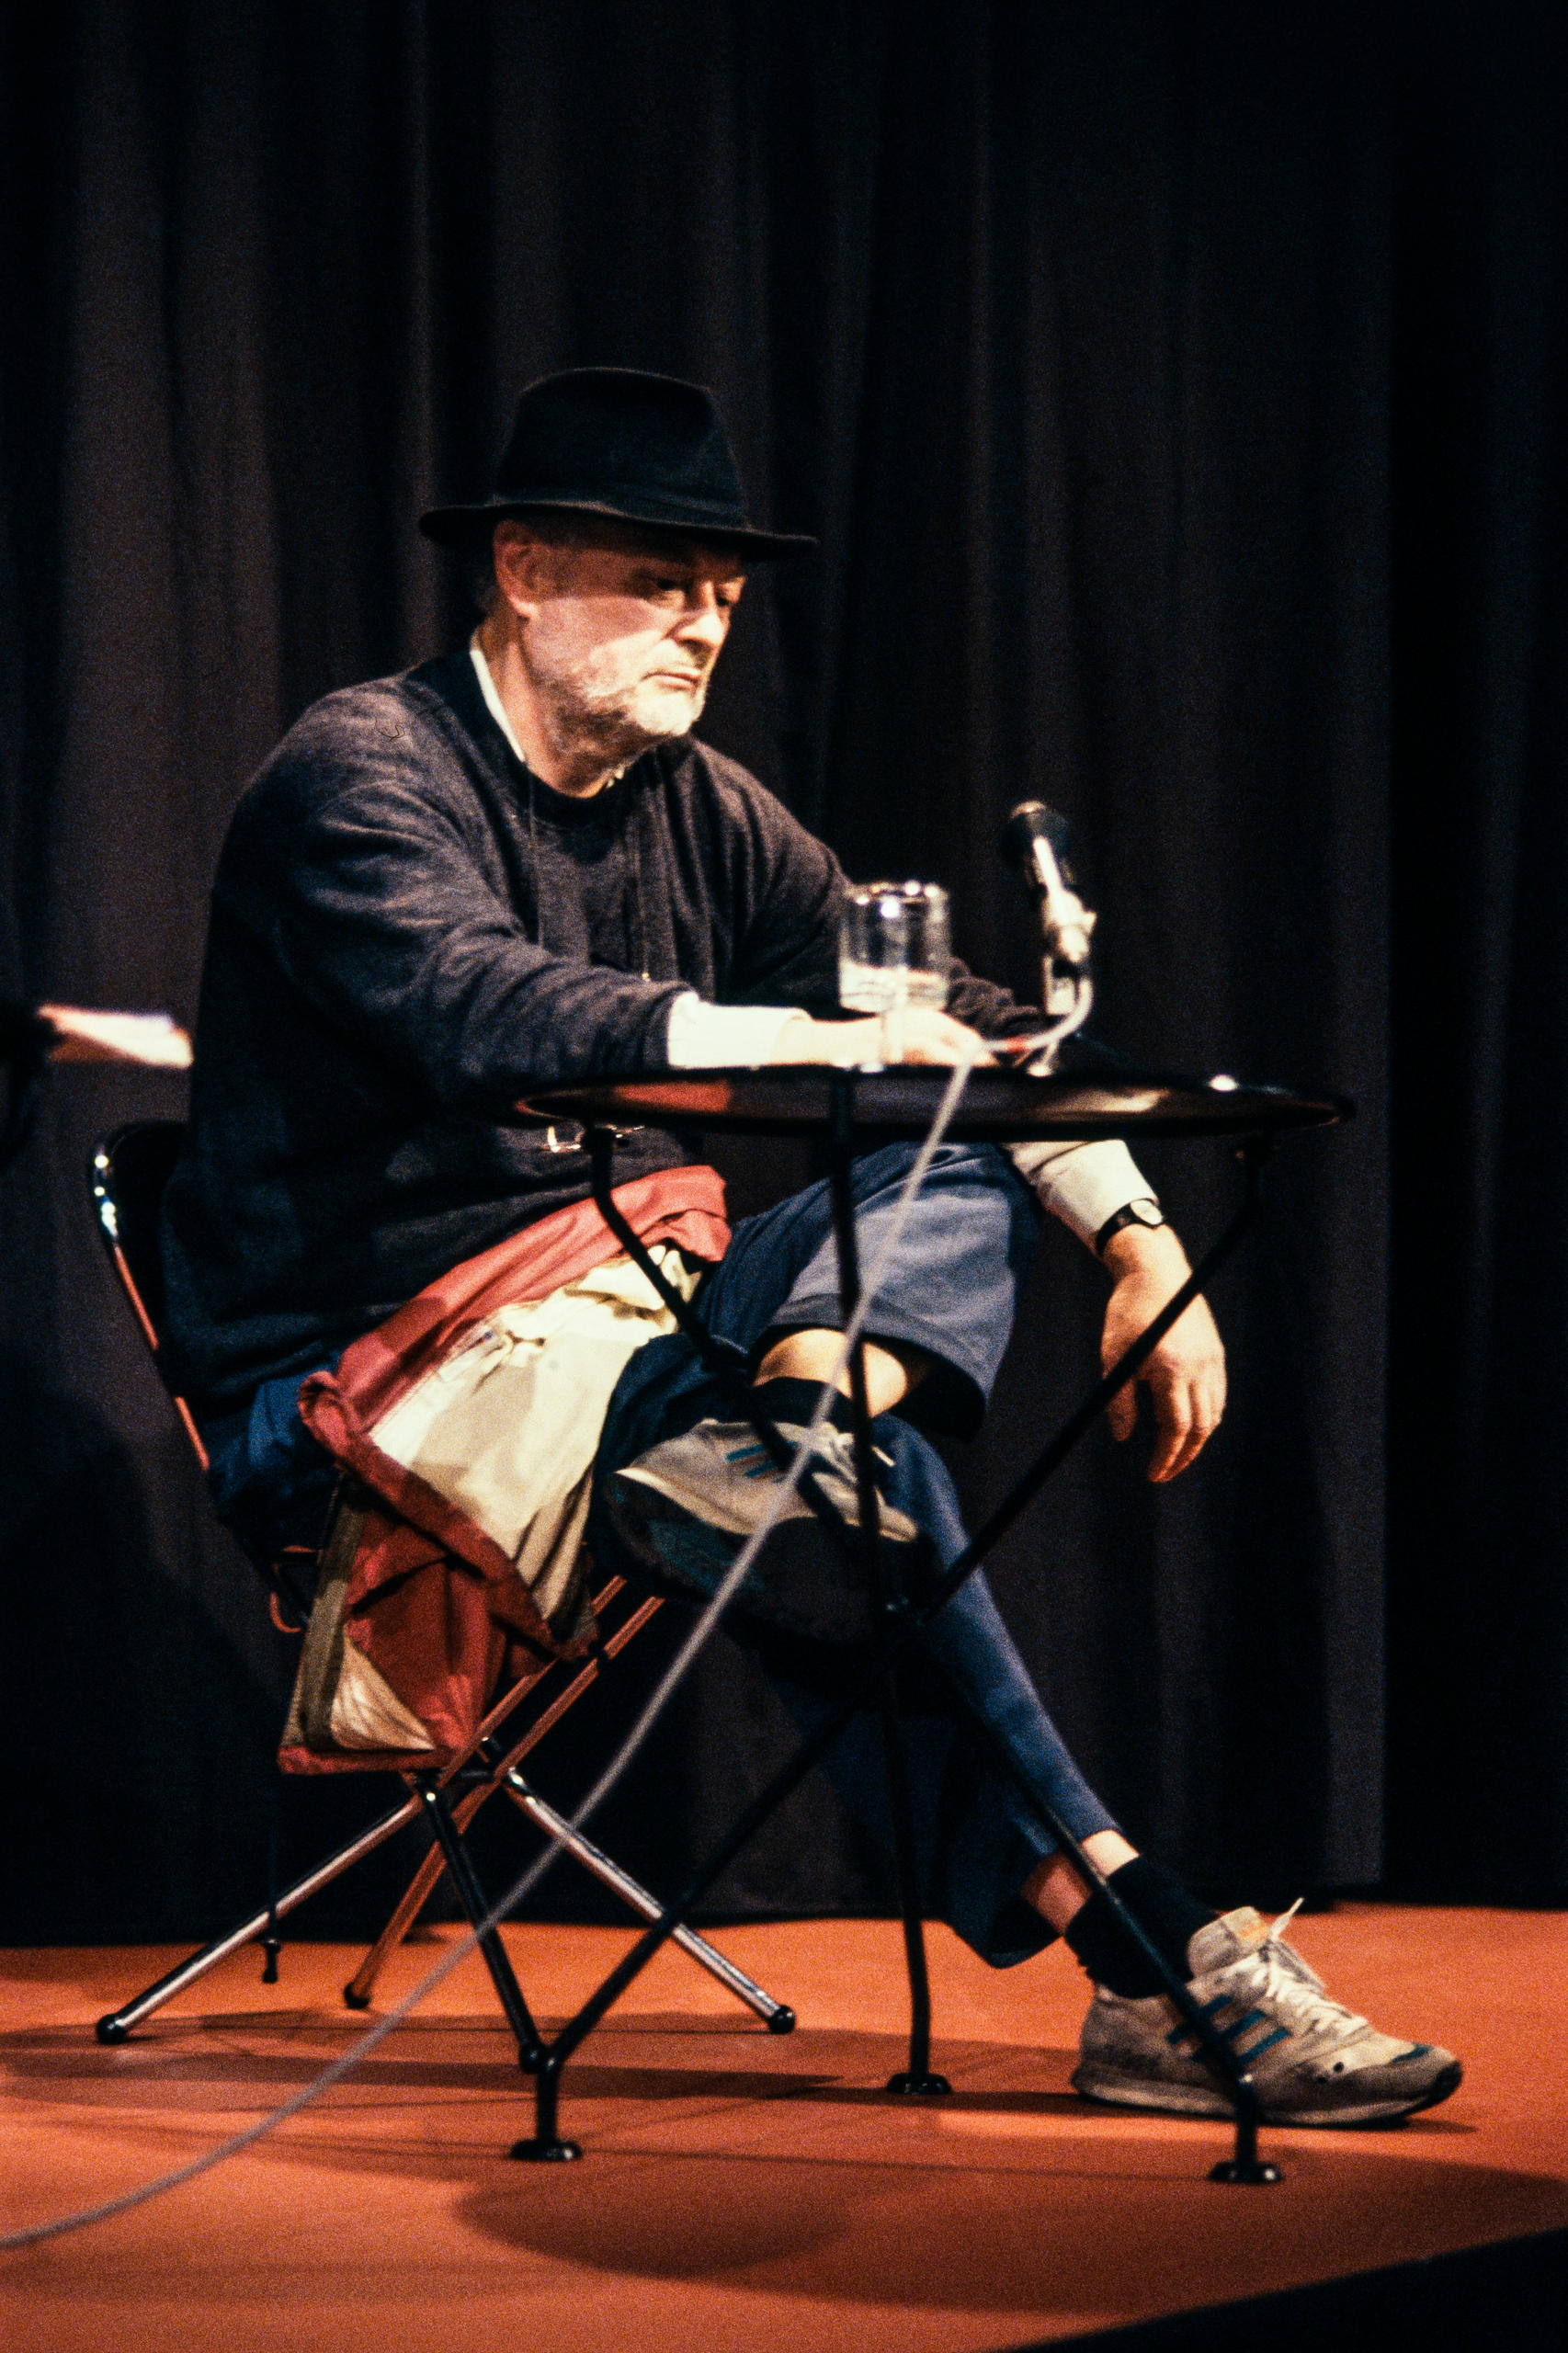 Farbfoto: Meienberg auf einer Bühne am Vorlesen